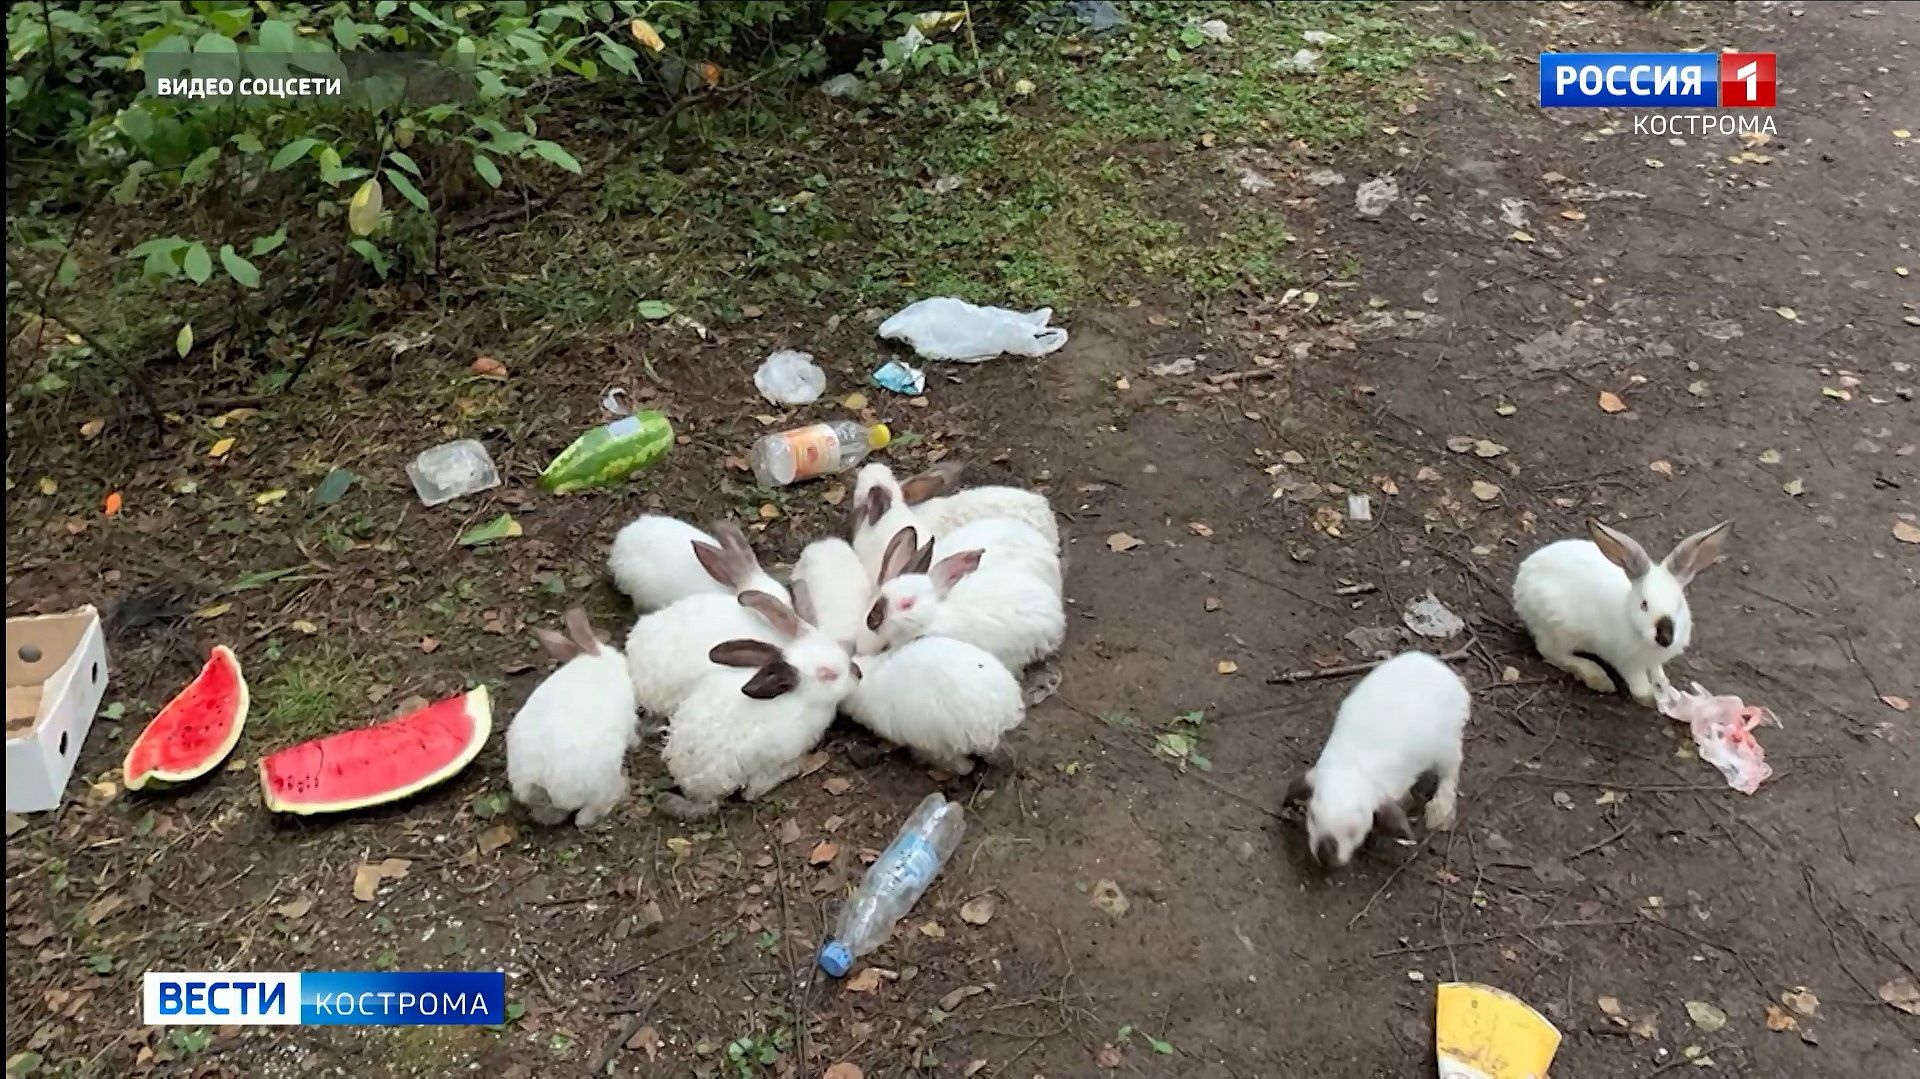 Нашествие кроликов в Костроме может быть вызвано болезнями